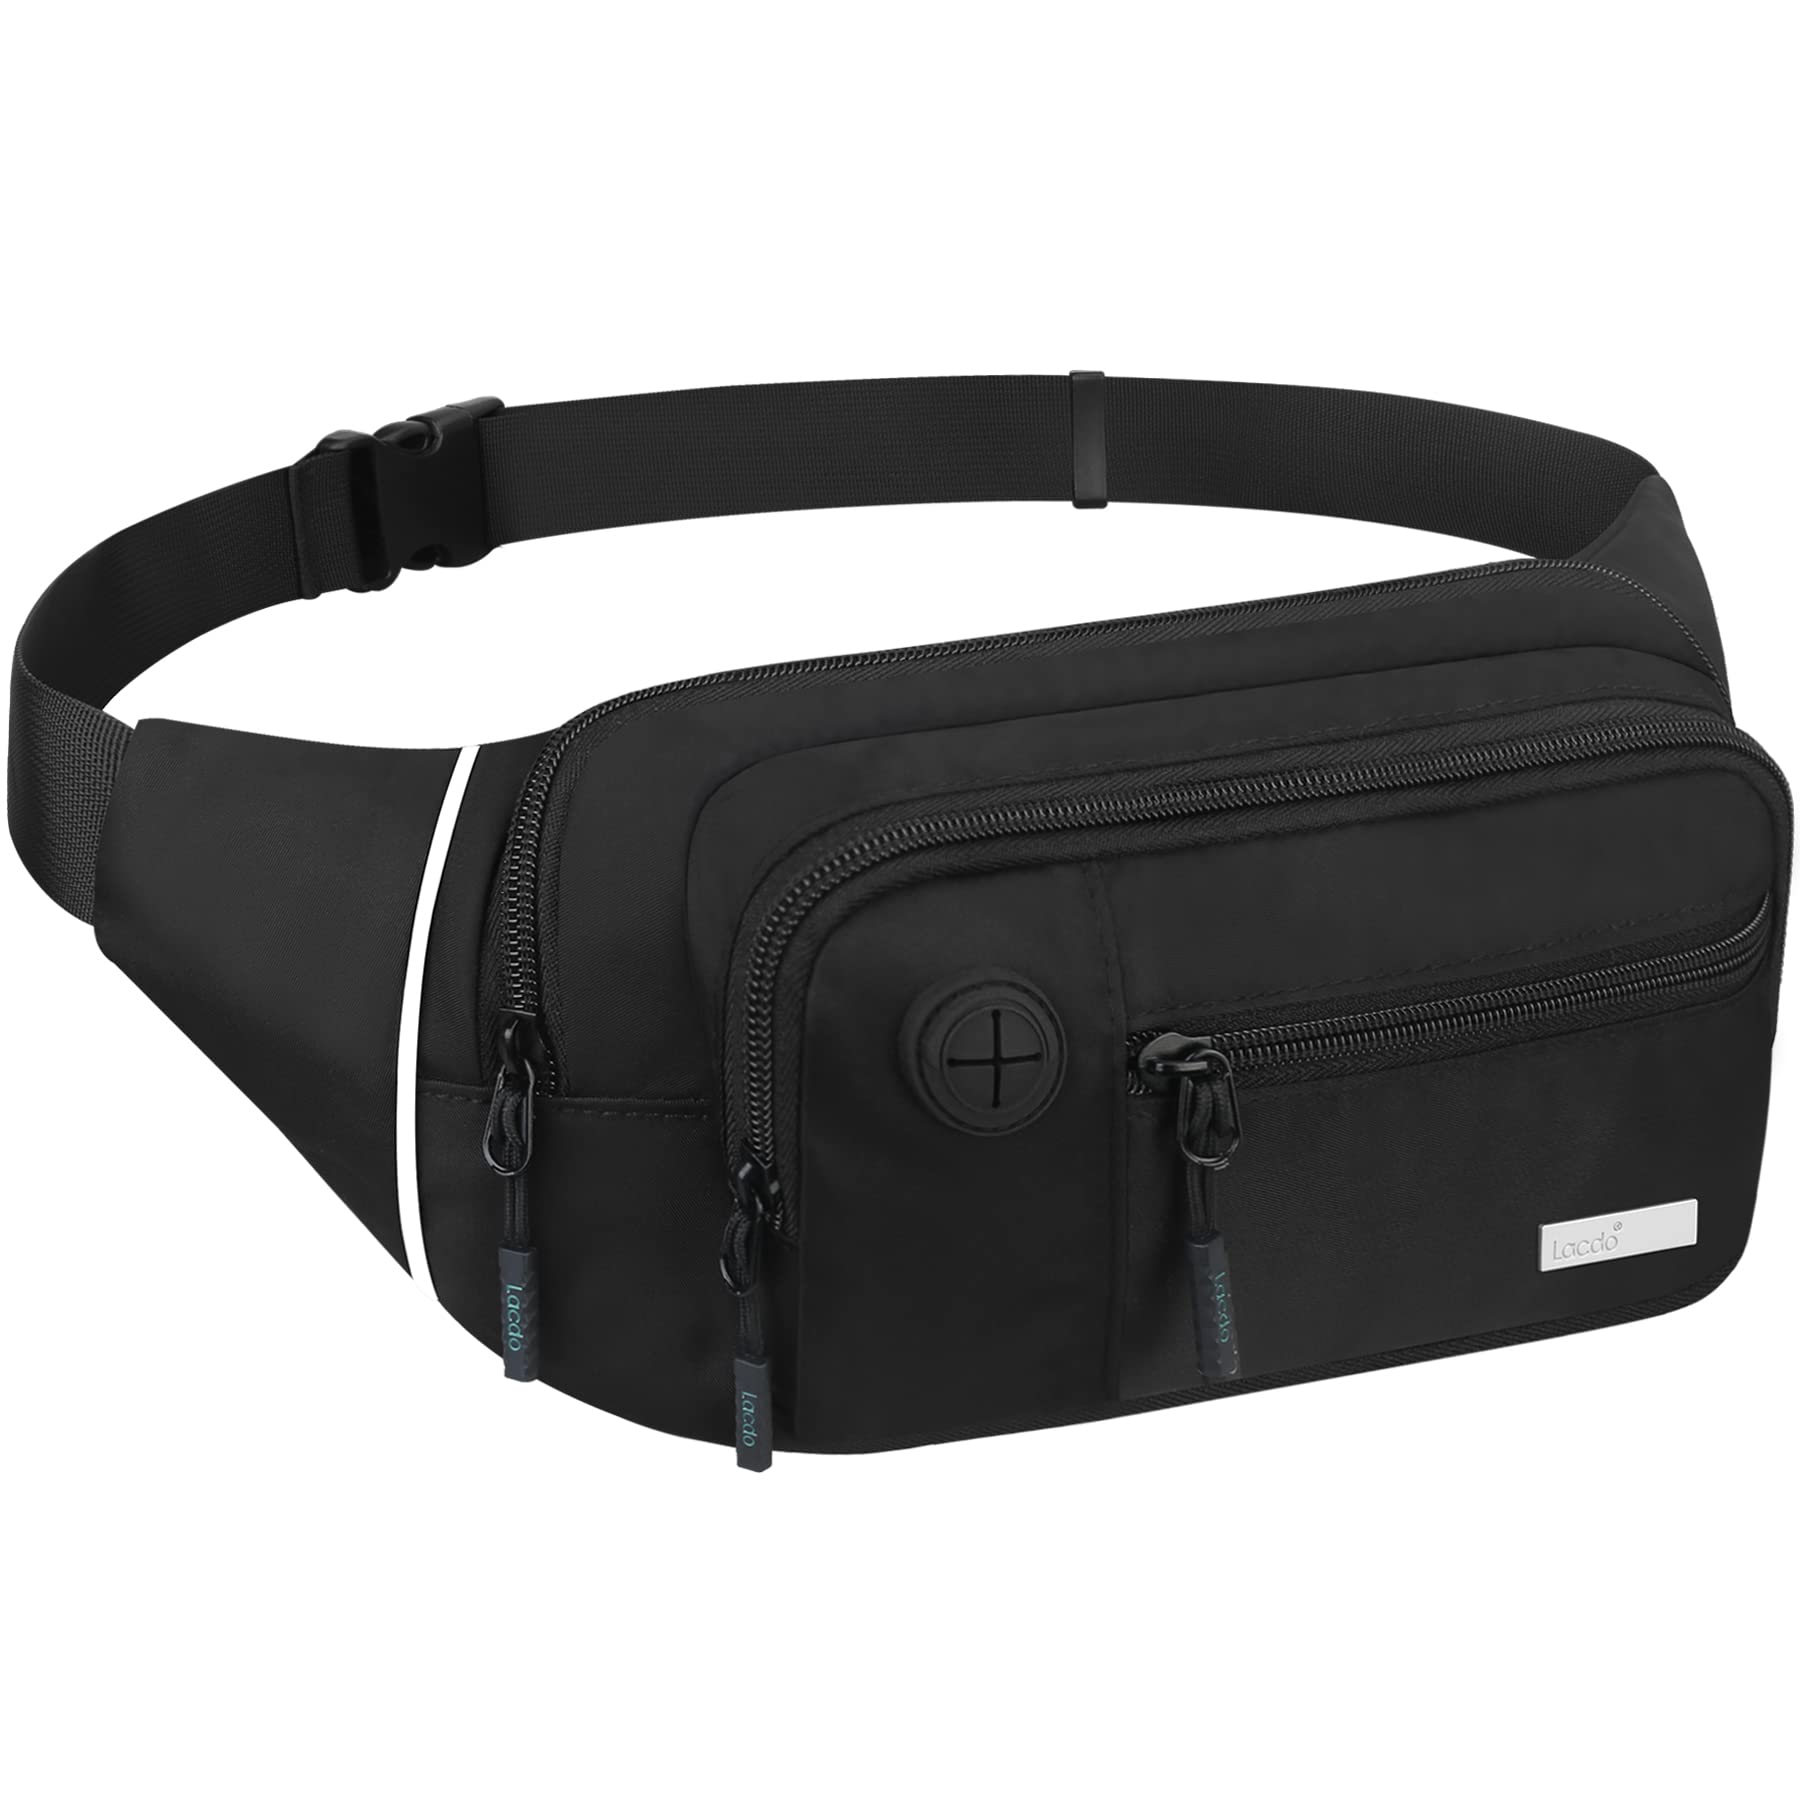 Multipurpose Waist Sports Belt/Bag - For Running/Hiking